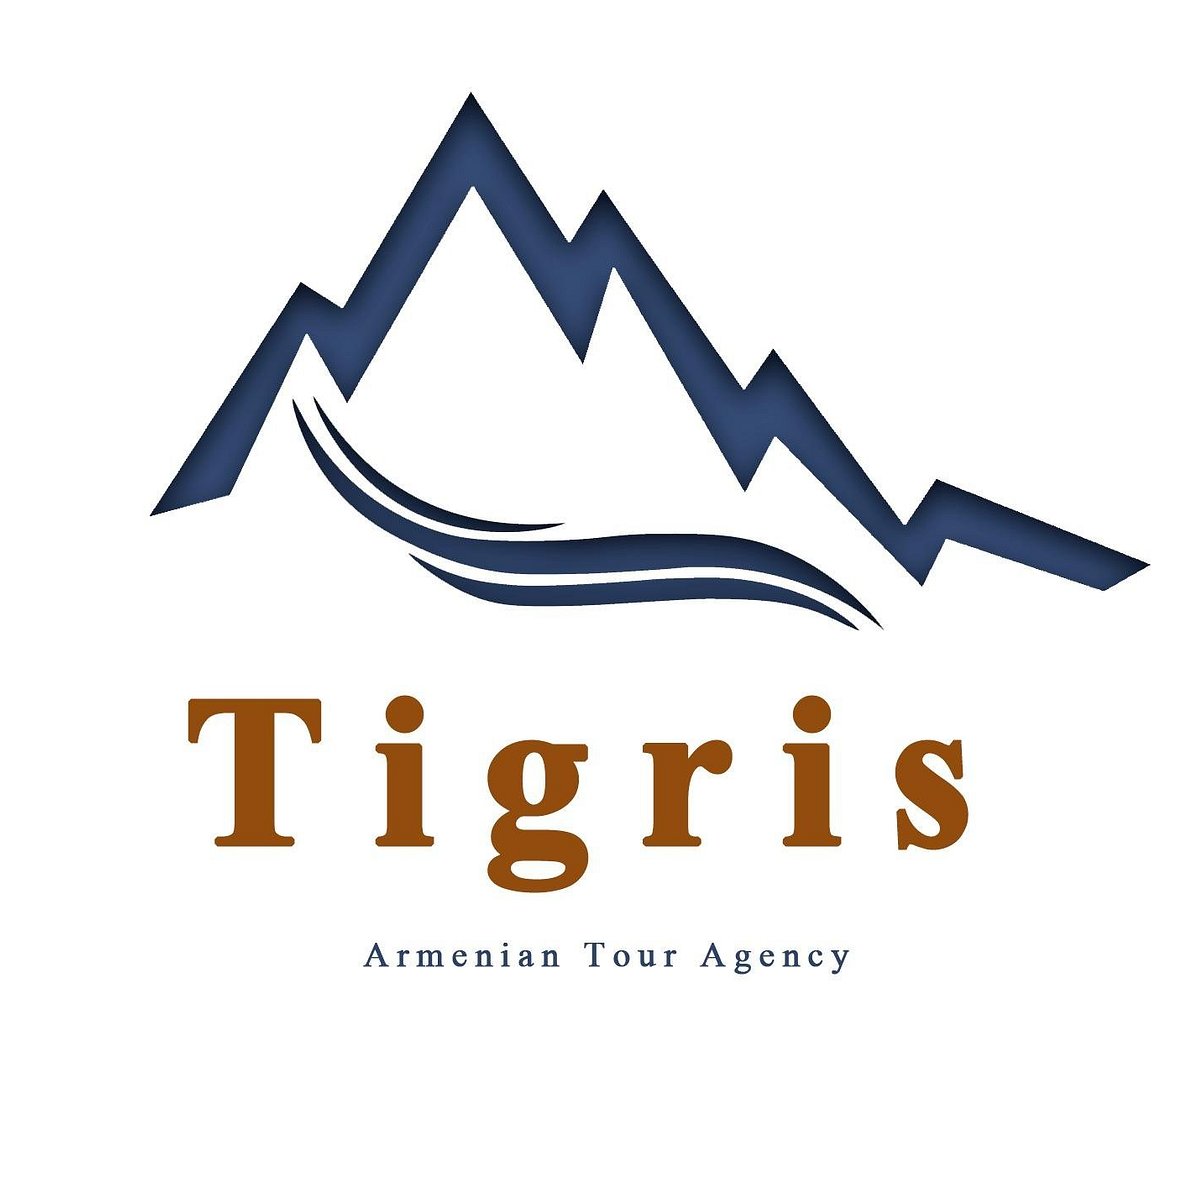 armenia tour agency